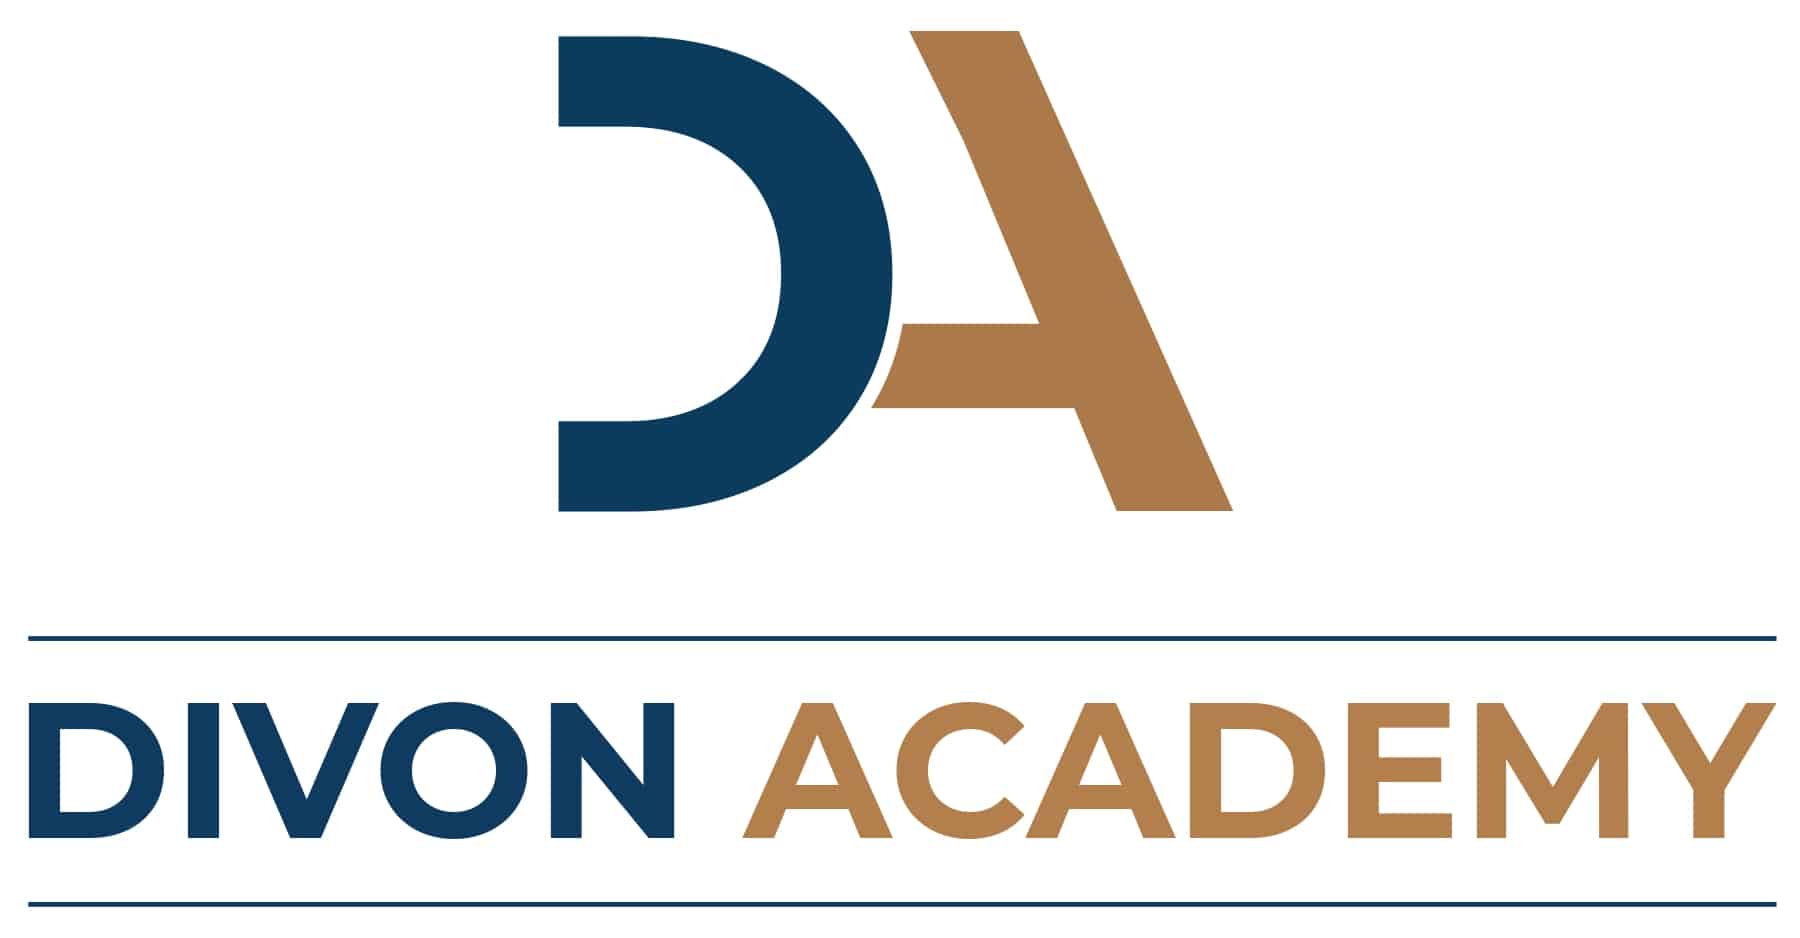 Divon Academy